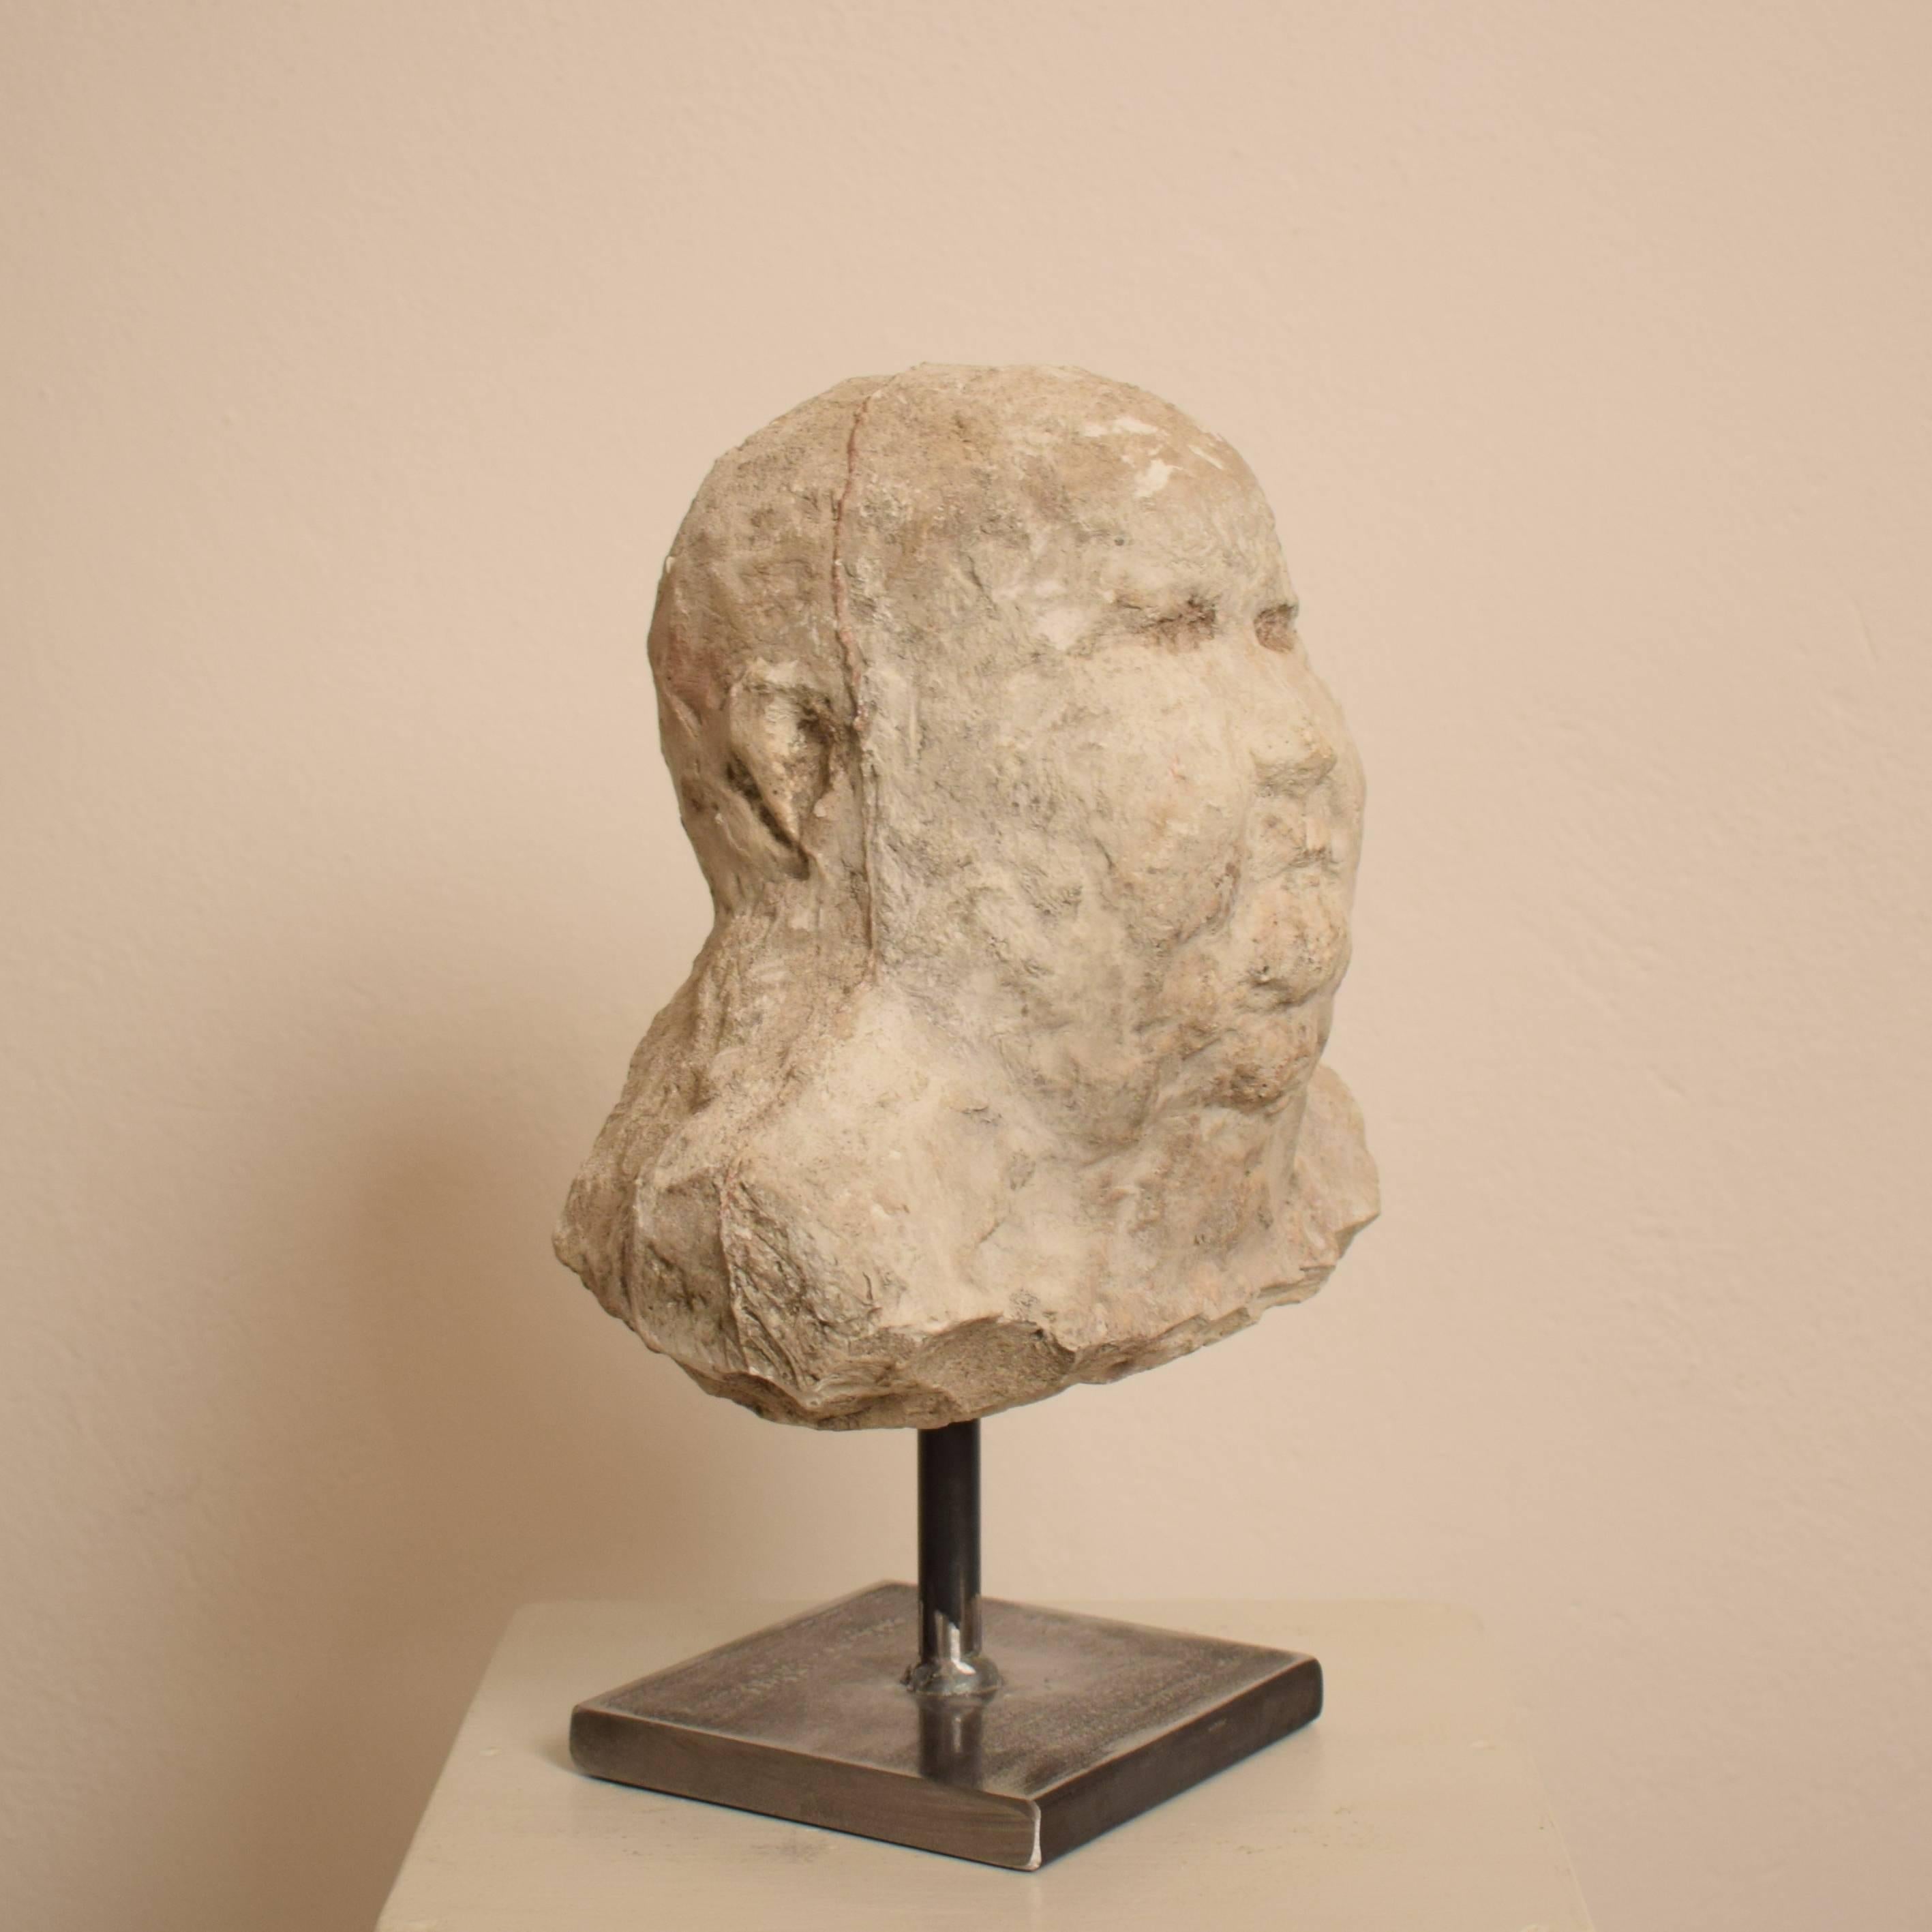 Ce buste en plâtre a été réalisé au début du 20e siècle. Il a probablement été fabriqué par Karl Koch en 1920.